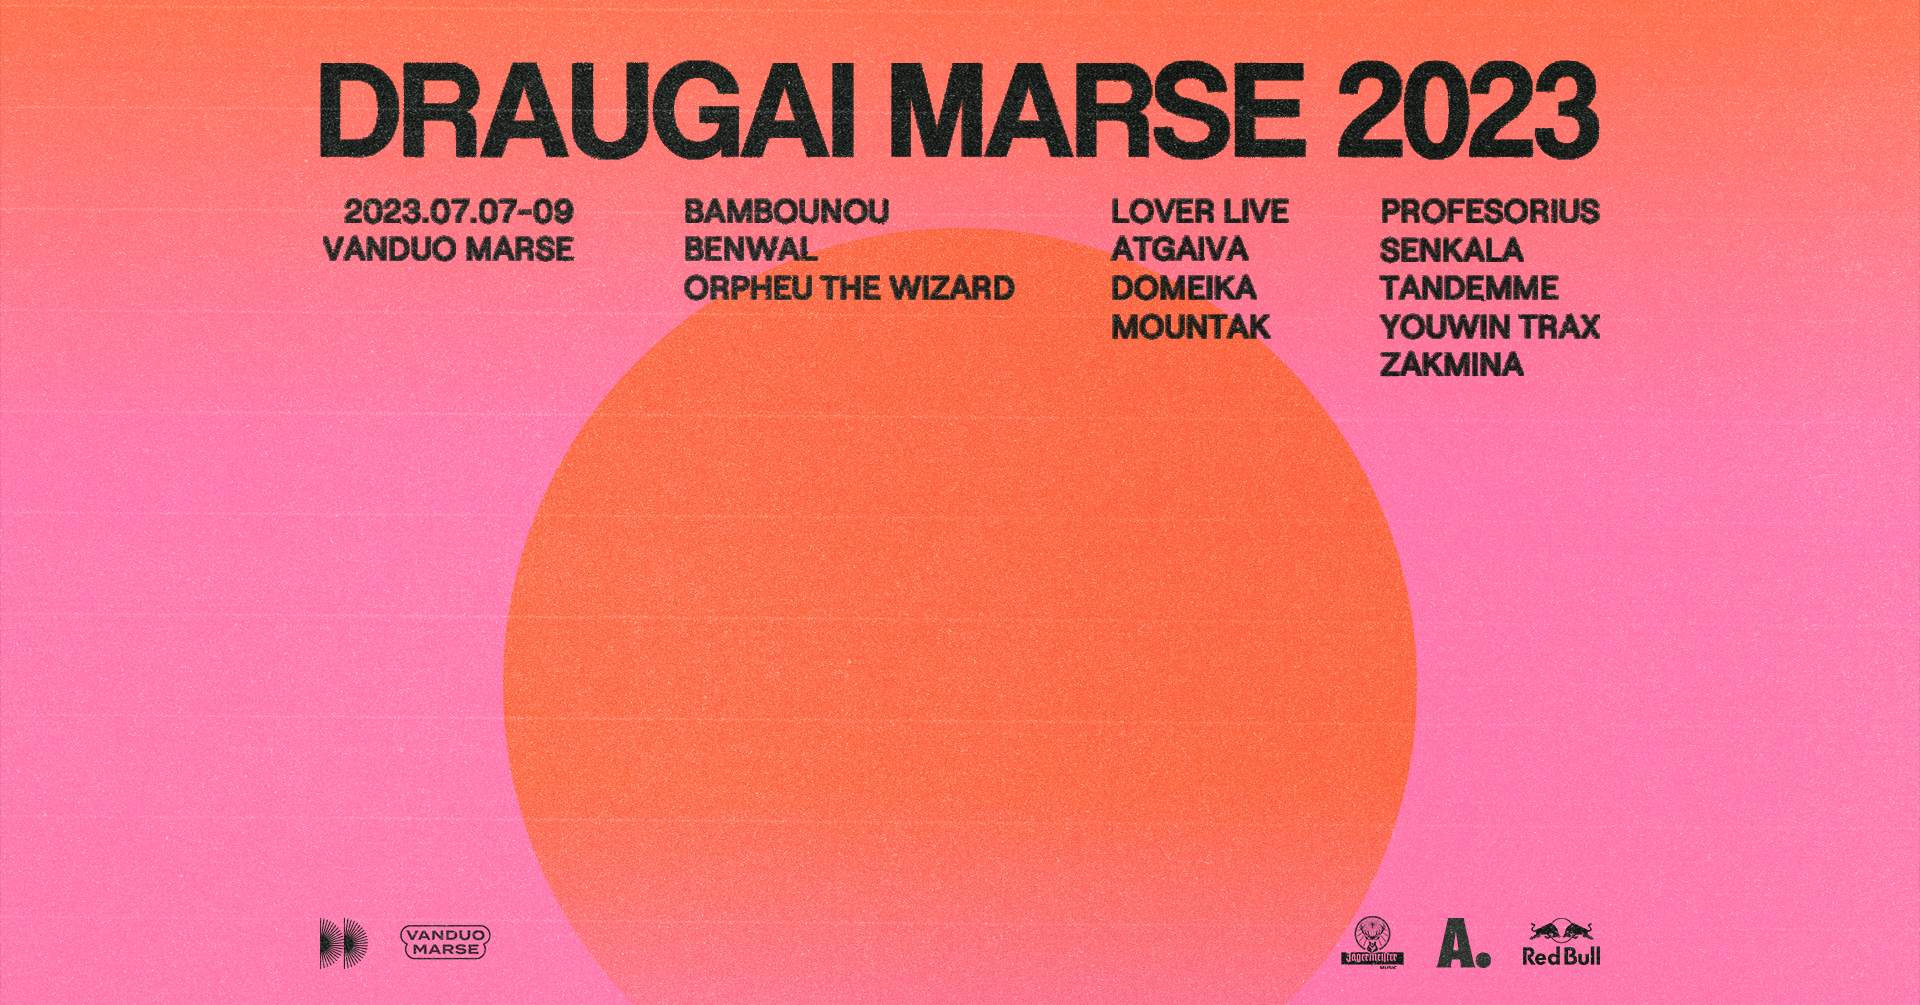 DRAUGAI MARSE 2023: Bambounou, Benwal, Orpheu The Wizard - フライヤー表